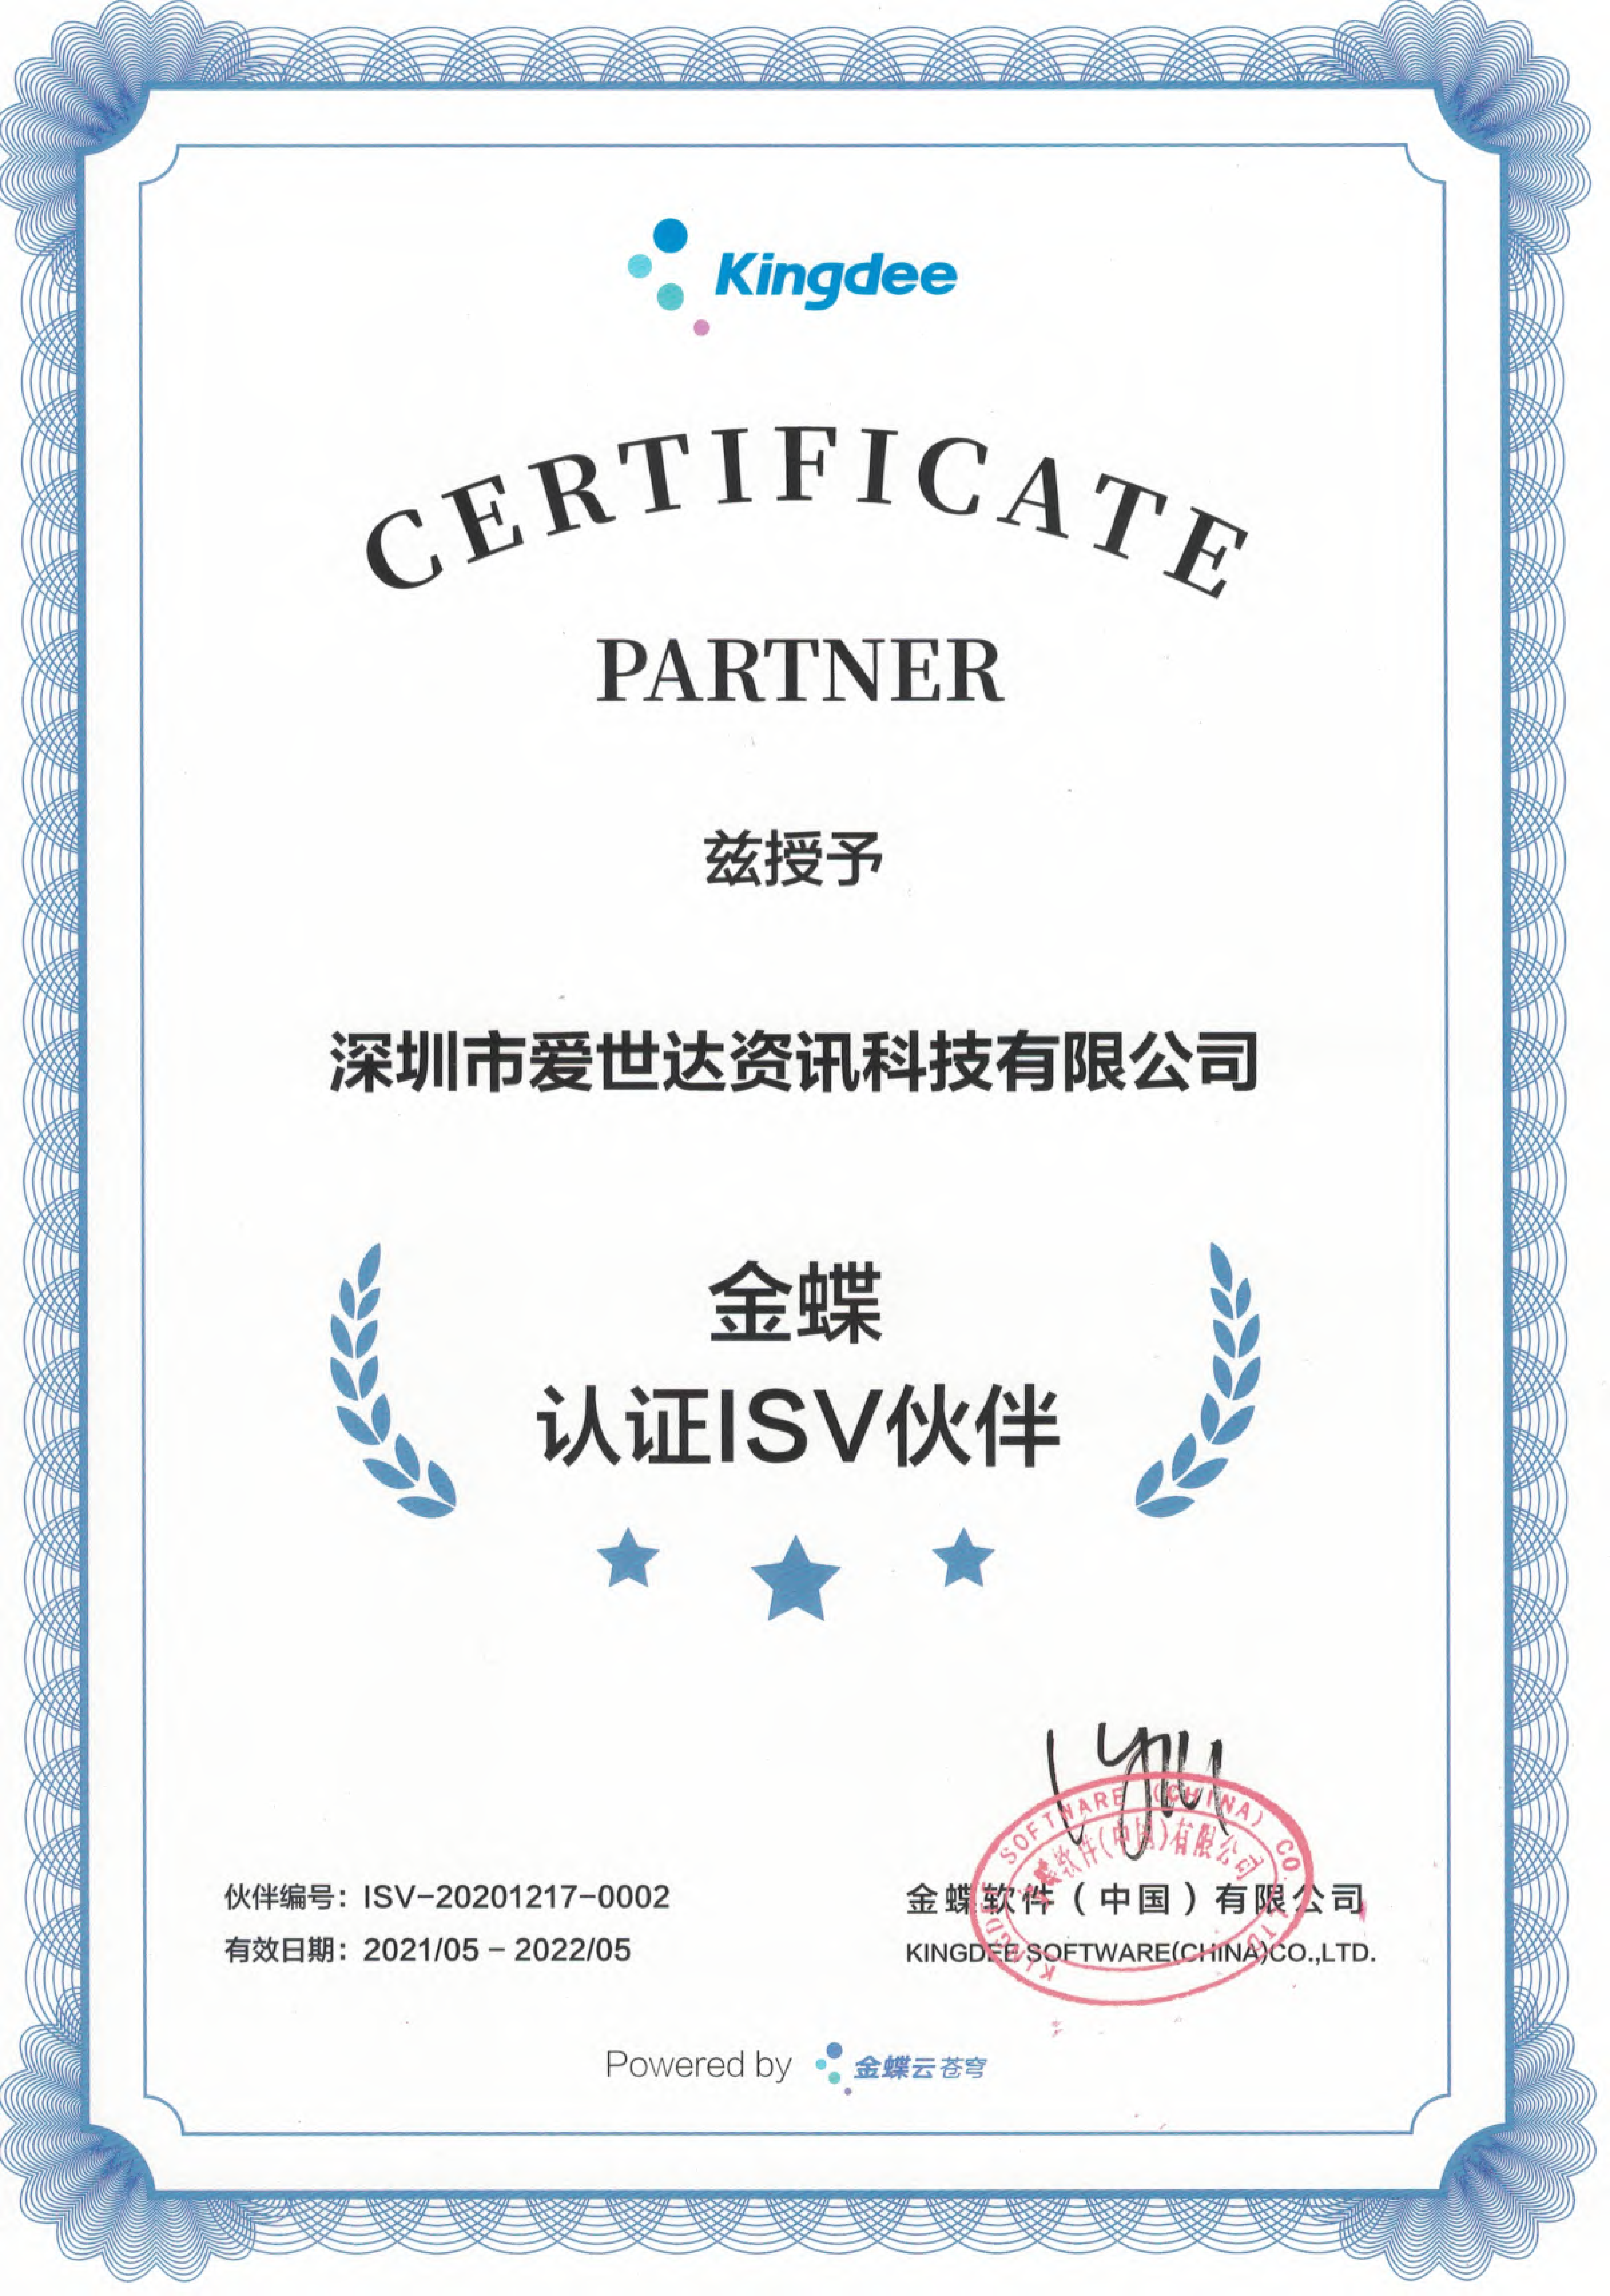 2021年金蝶认证ISV伙伴授权证书